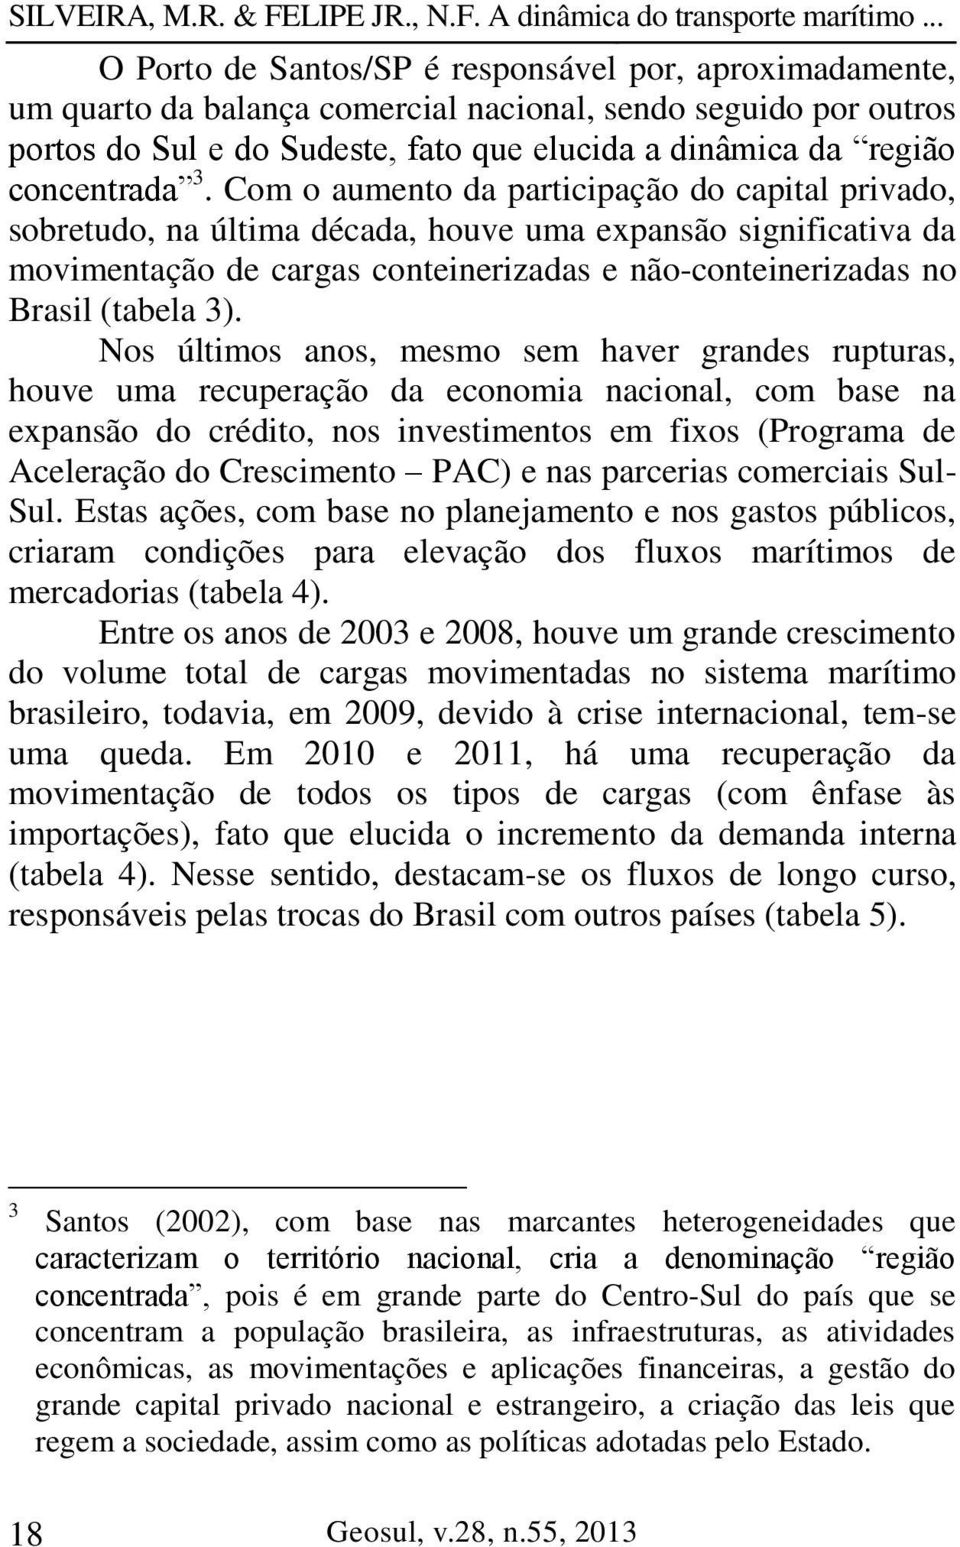 Com o aumento da participação do capital privado, sobretudo, na última década, houve uma expansão significativa da movimentação de cargas conteinerizadas e não-conteinerizadas no Brasil (tabela 3).